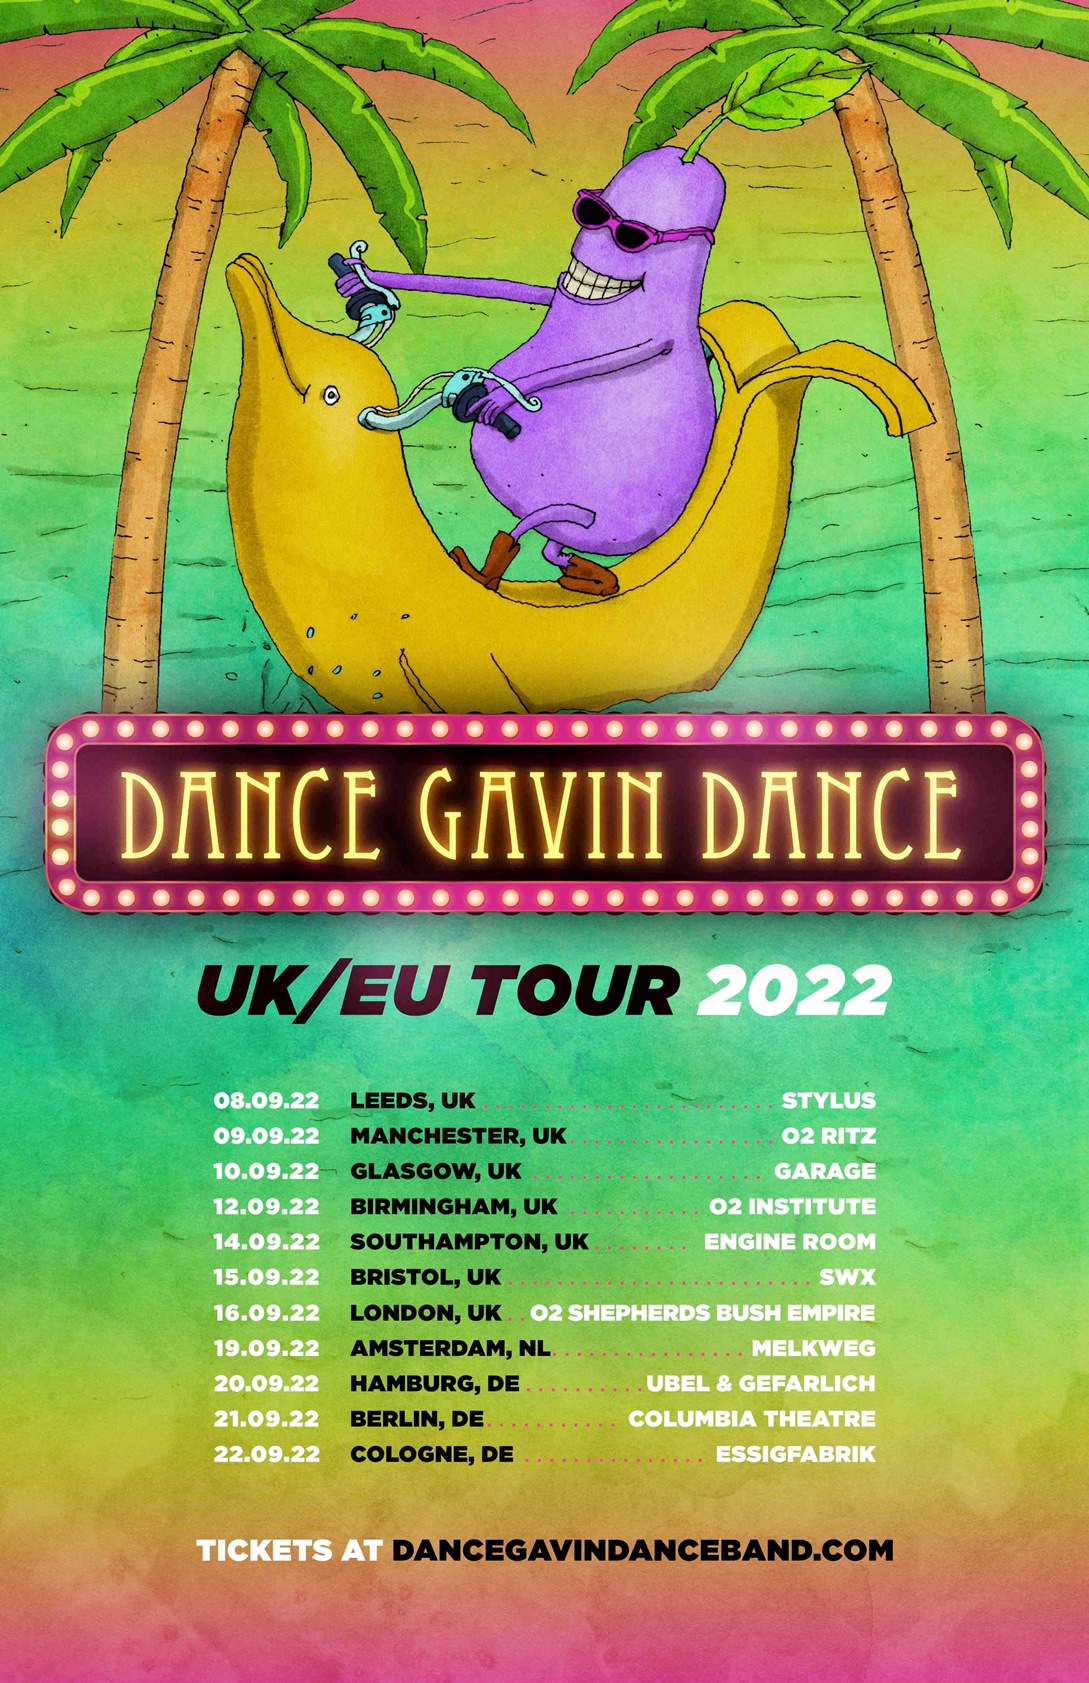 dance gavin dance tour 2022 cancelled